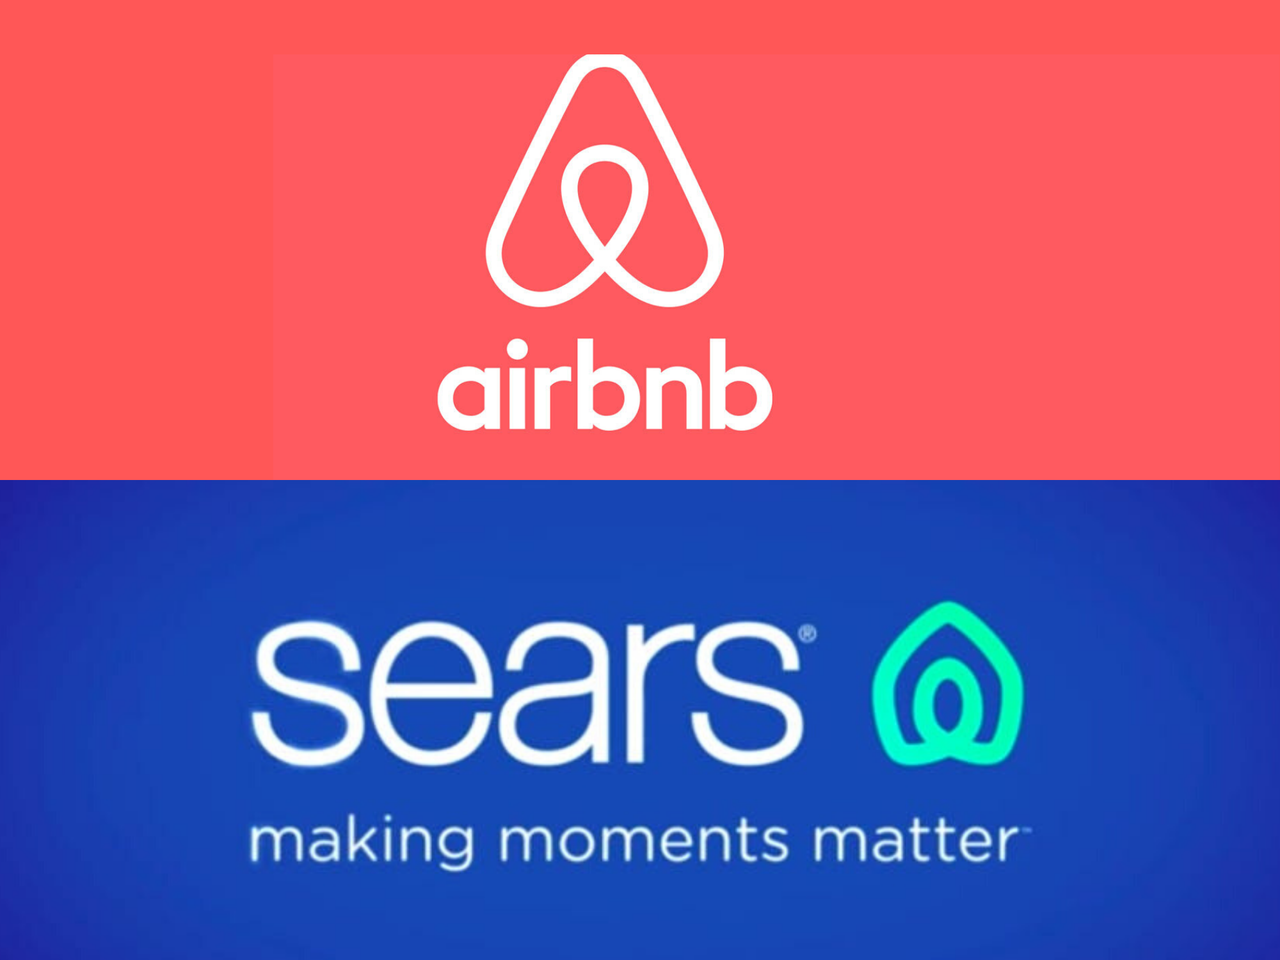 シアーズの新しいロゴはAirbnbに似ていると非難された。